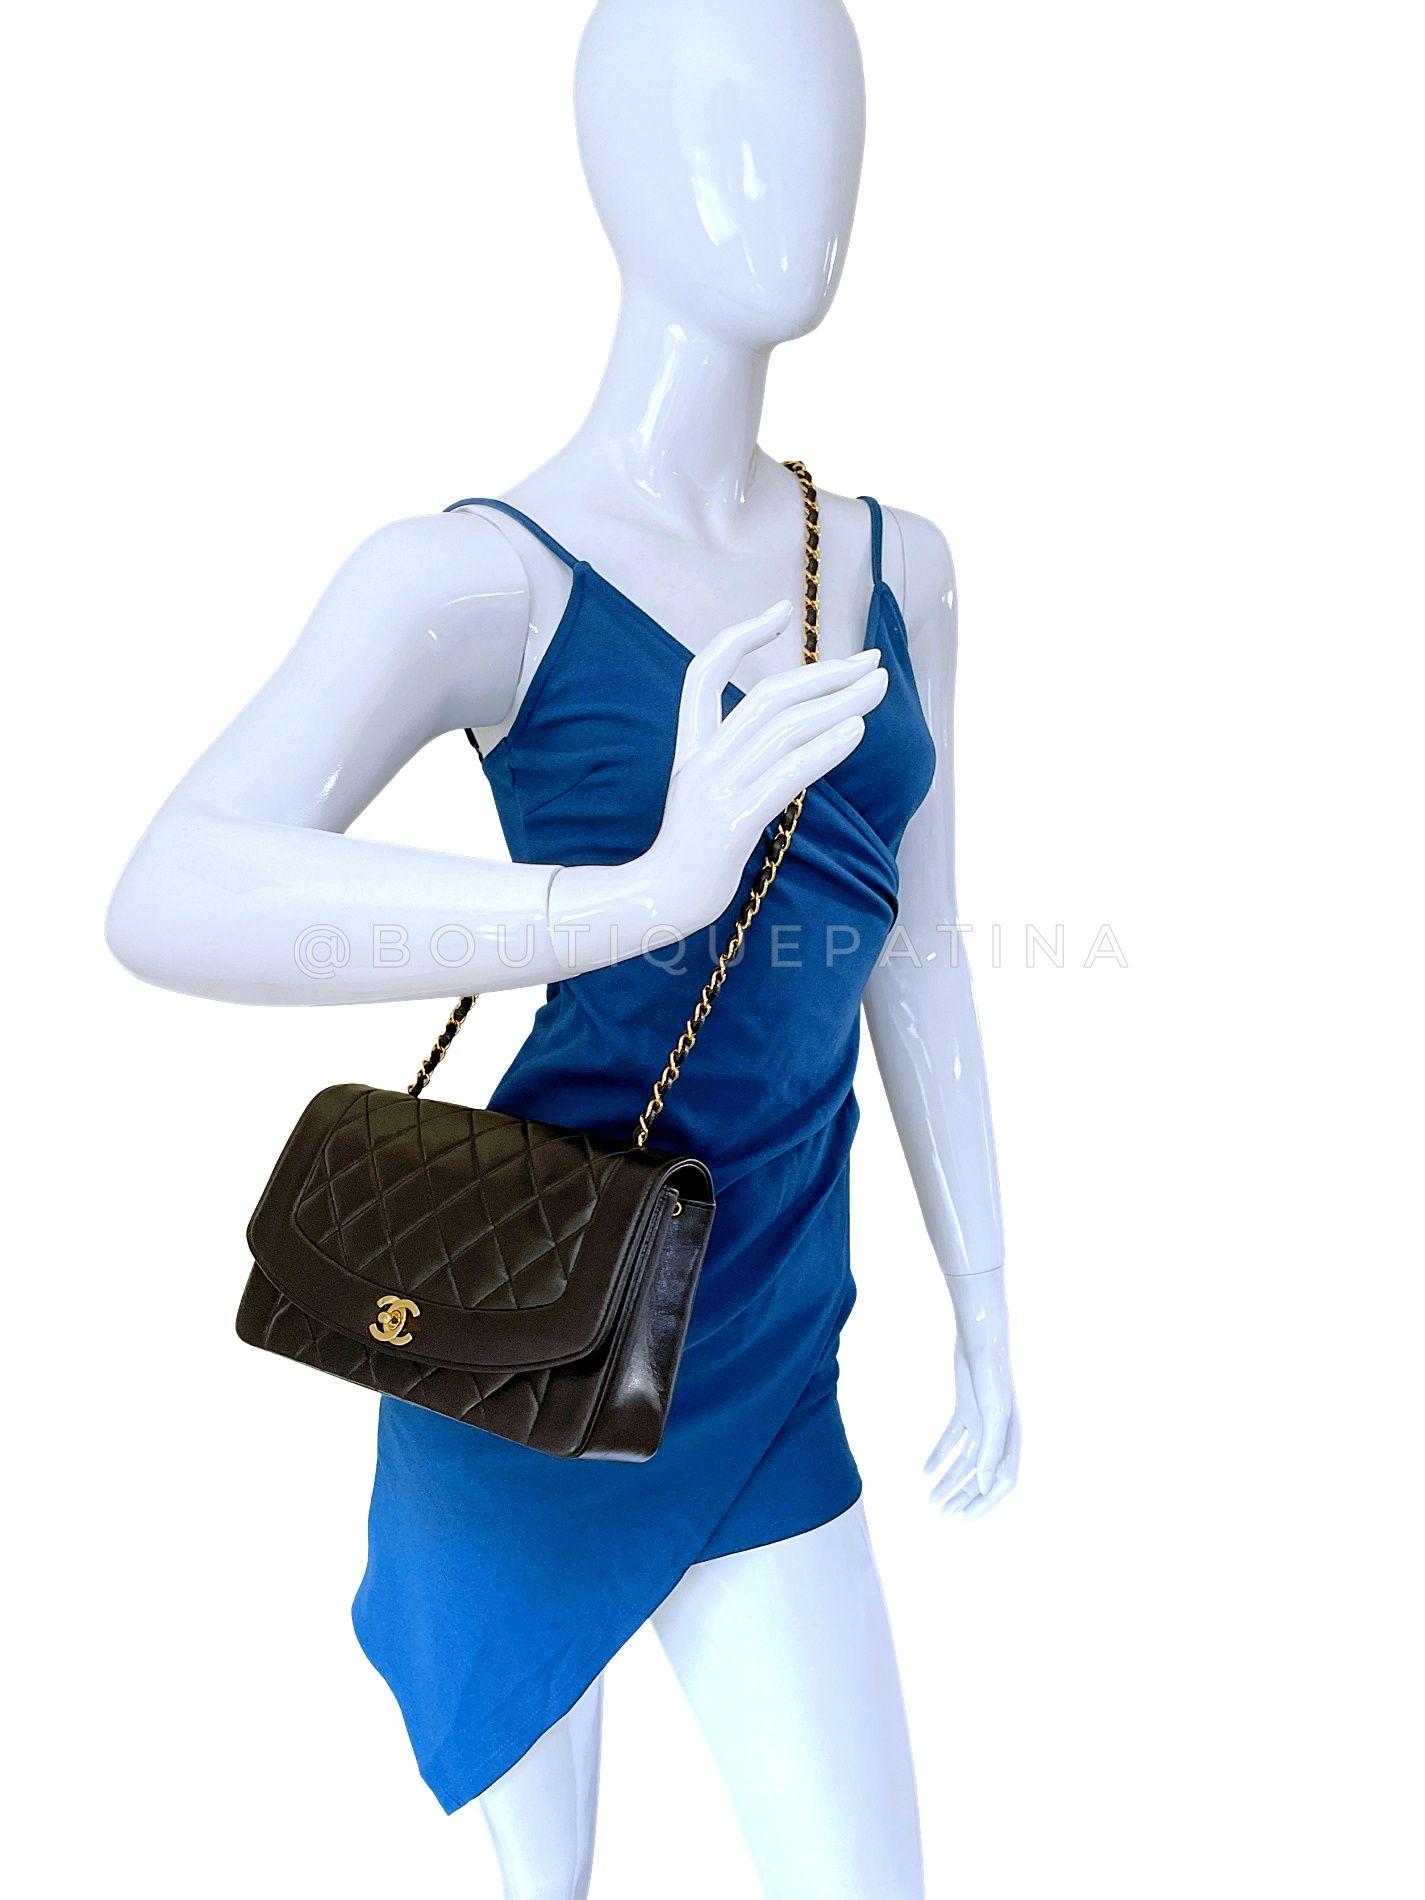 Chanel 1994 Vintage Black Lambskin Medium Diana Flap Bag 24k GHW 64411 For Sale 10